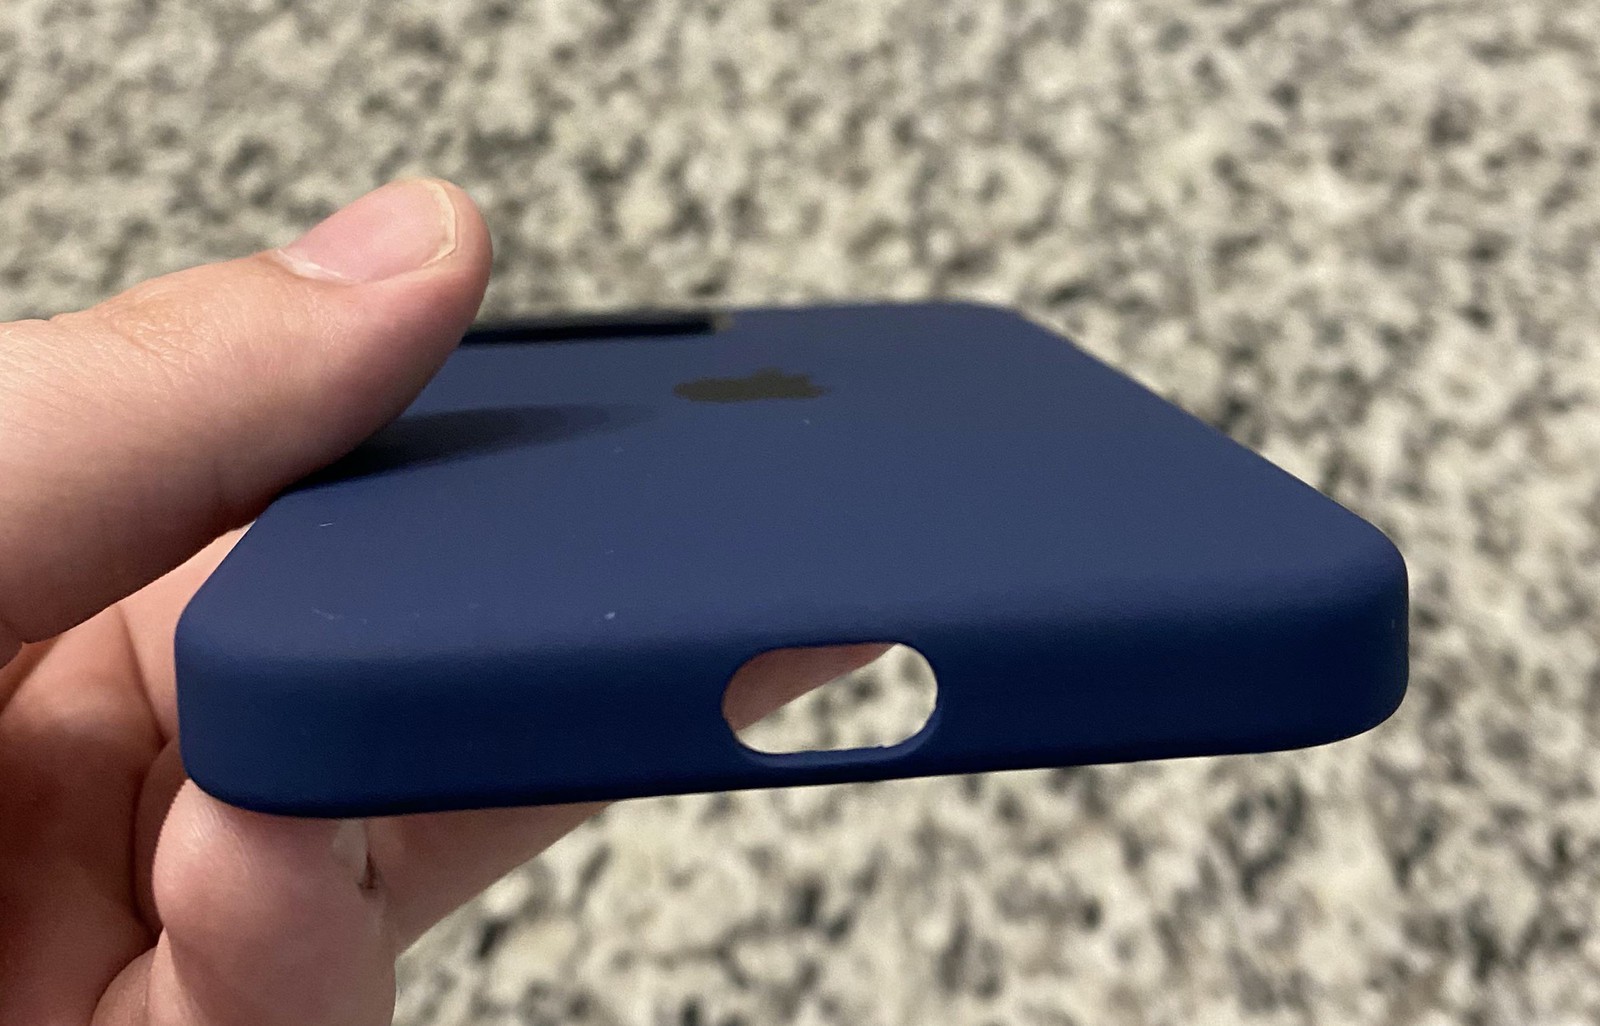 部分用户买到了没有扬声器开孔的iPhone 12硅胶保护壳